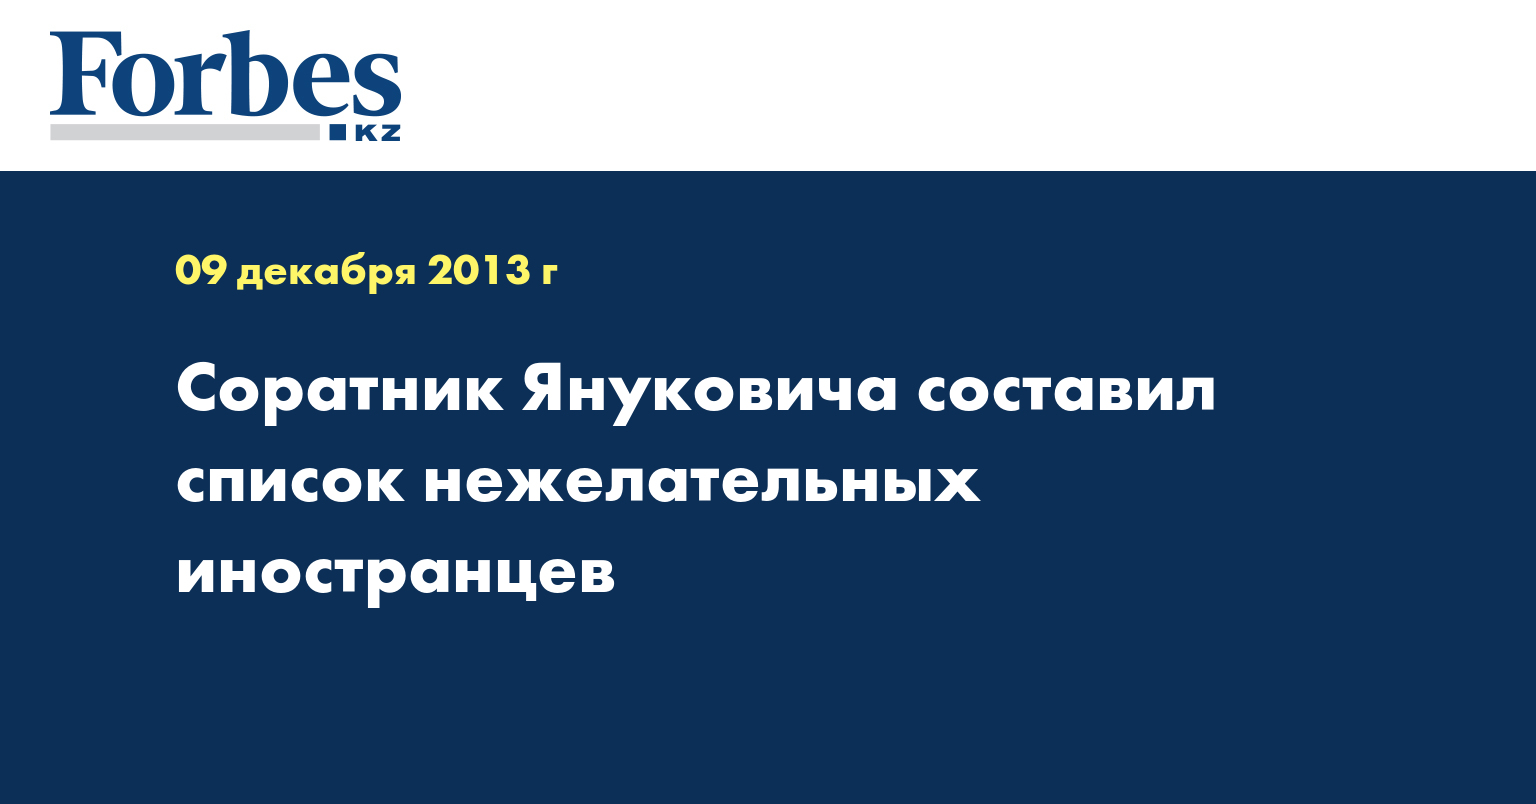 Соратник Януковича составил список нежелательных иностранцев